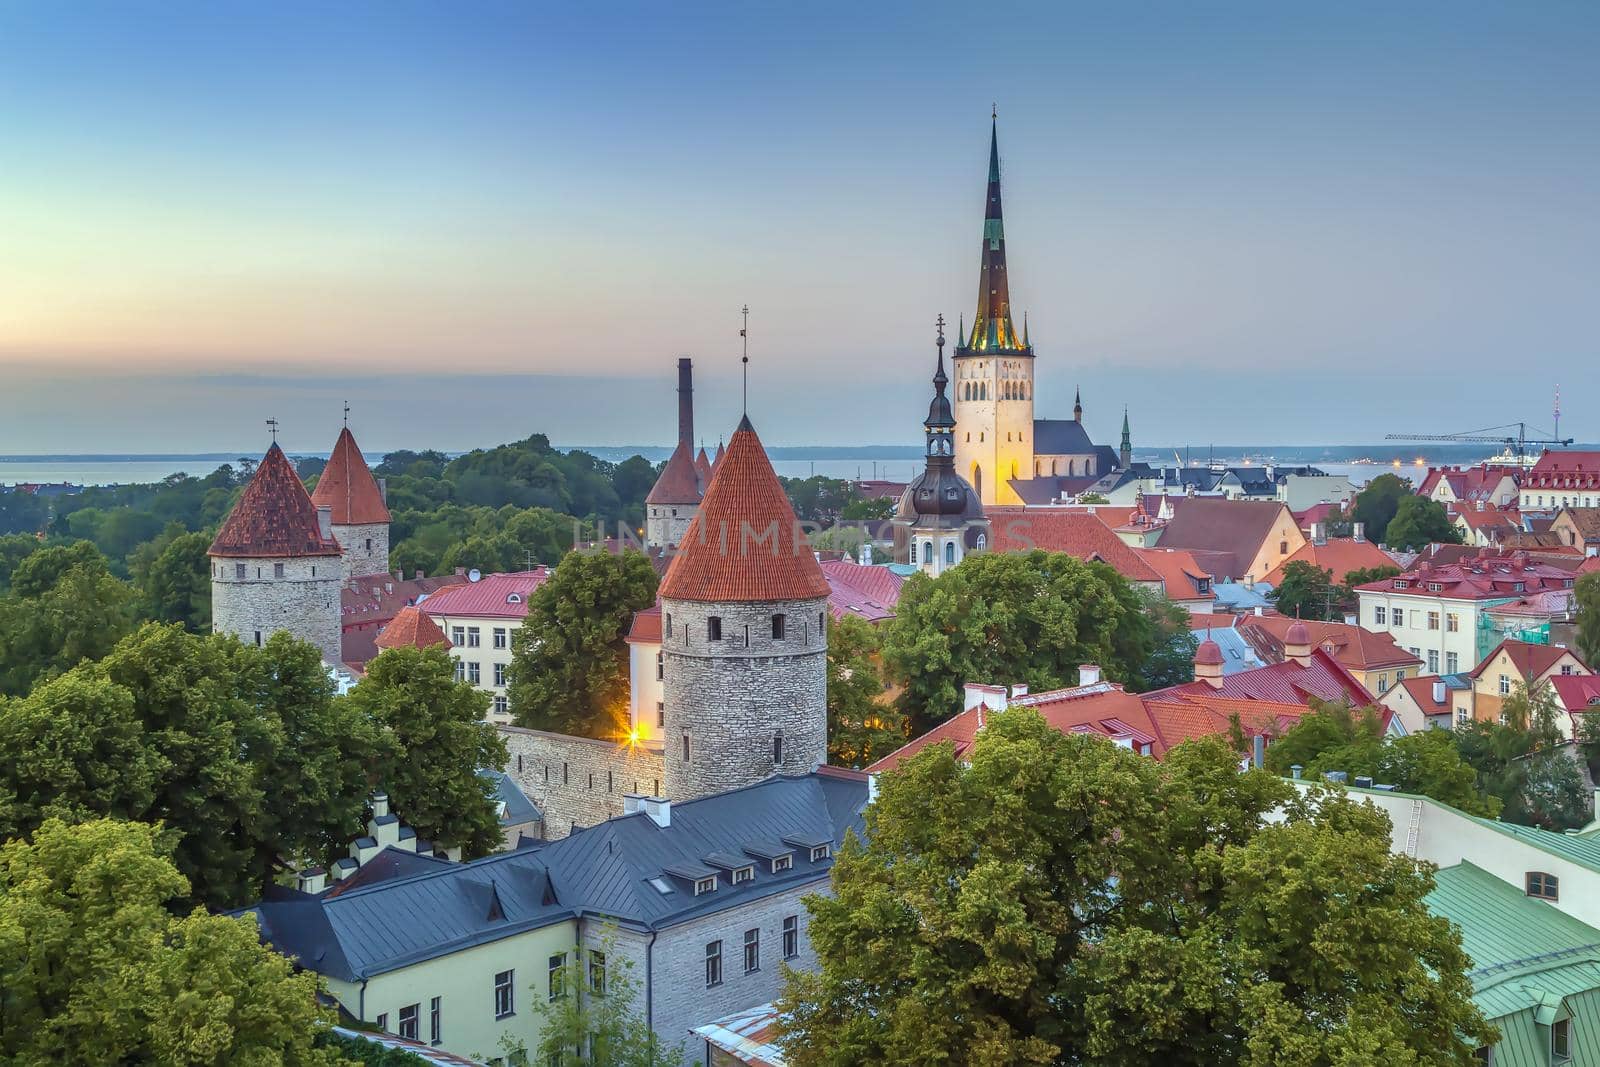 View of Walls of Tallinn, Estonia by borisb17